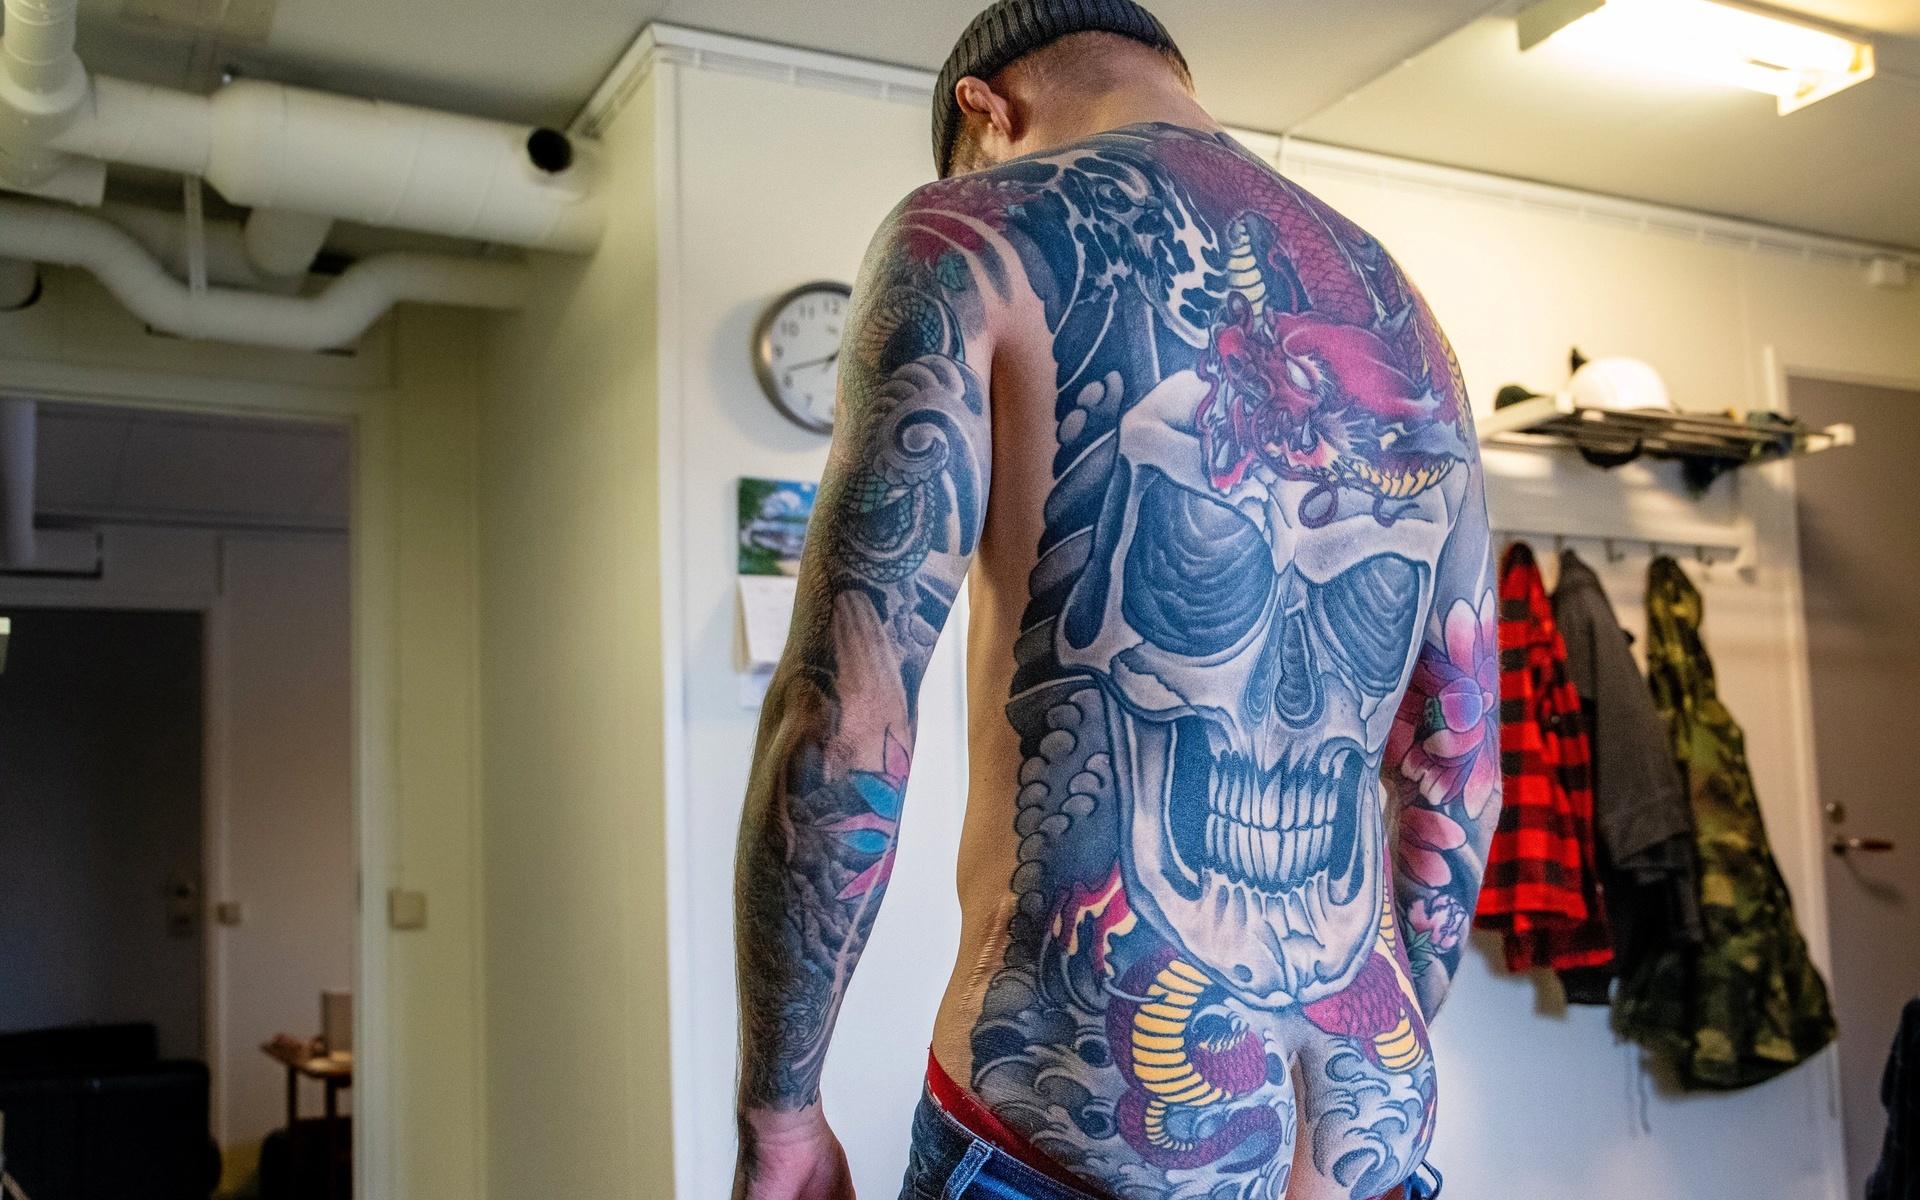 Det började när han var 17 år gammal och sen blev det bara mer och mer. Rickard kan inte räkna sina tatueringar utan ser det som en stor härlighet.